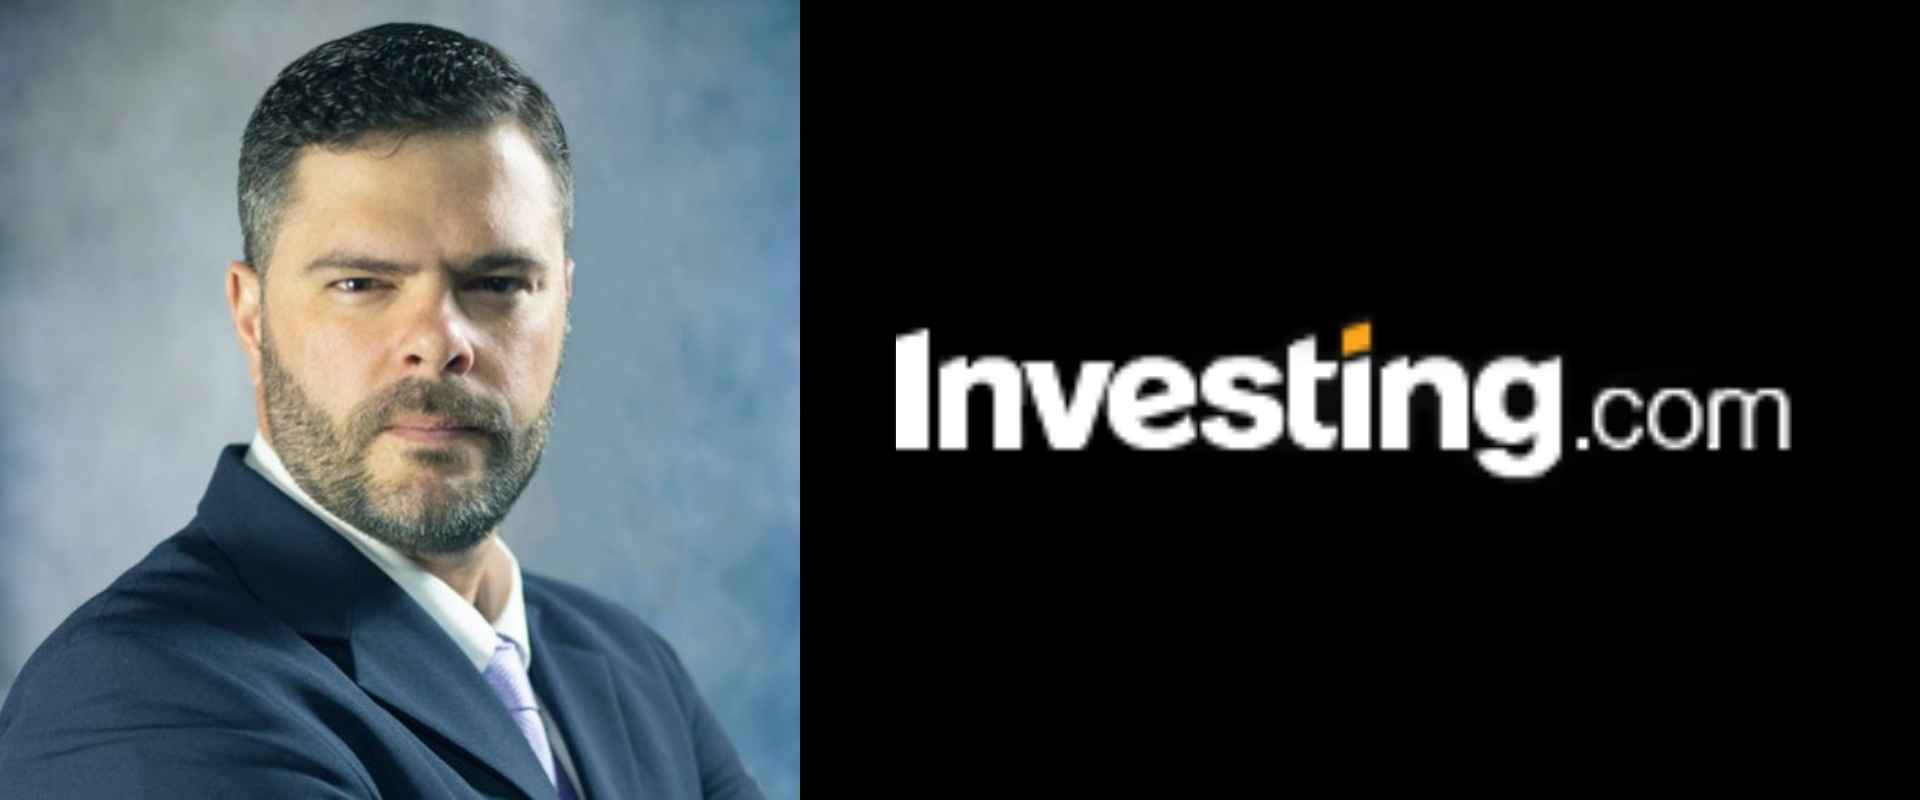 Continuando seu artigo do Investing.com, o profº Carlos Heitor, dá seguimento as 12 Métricas de Risco Mais Importantes em Investimentos.